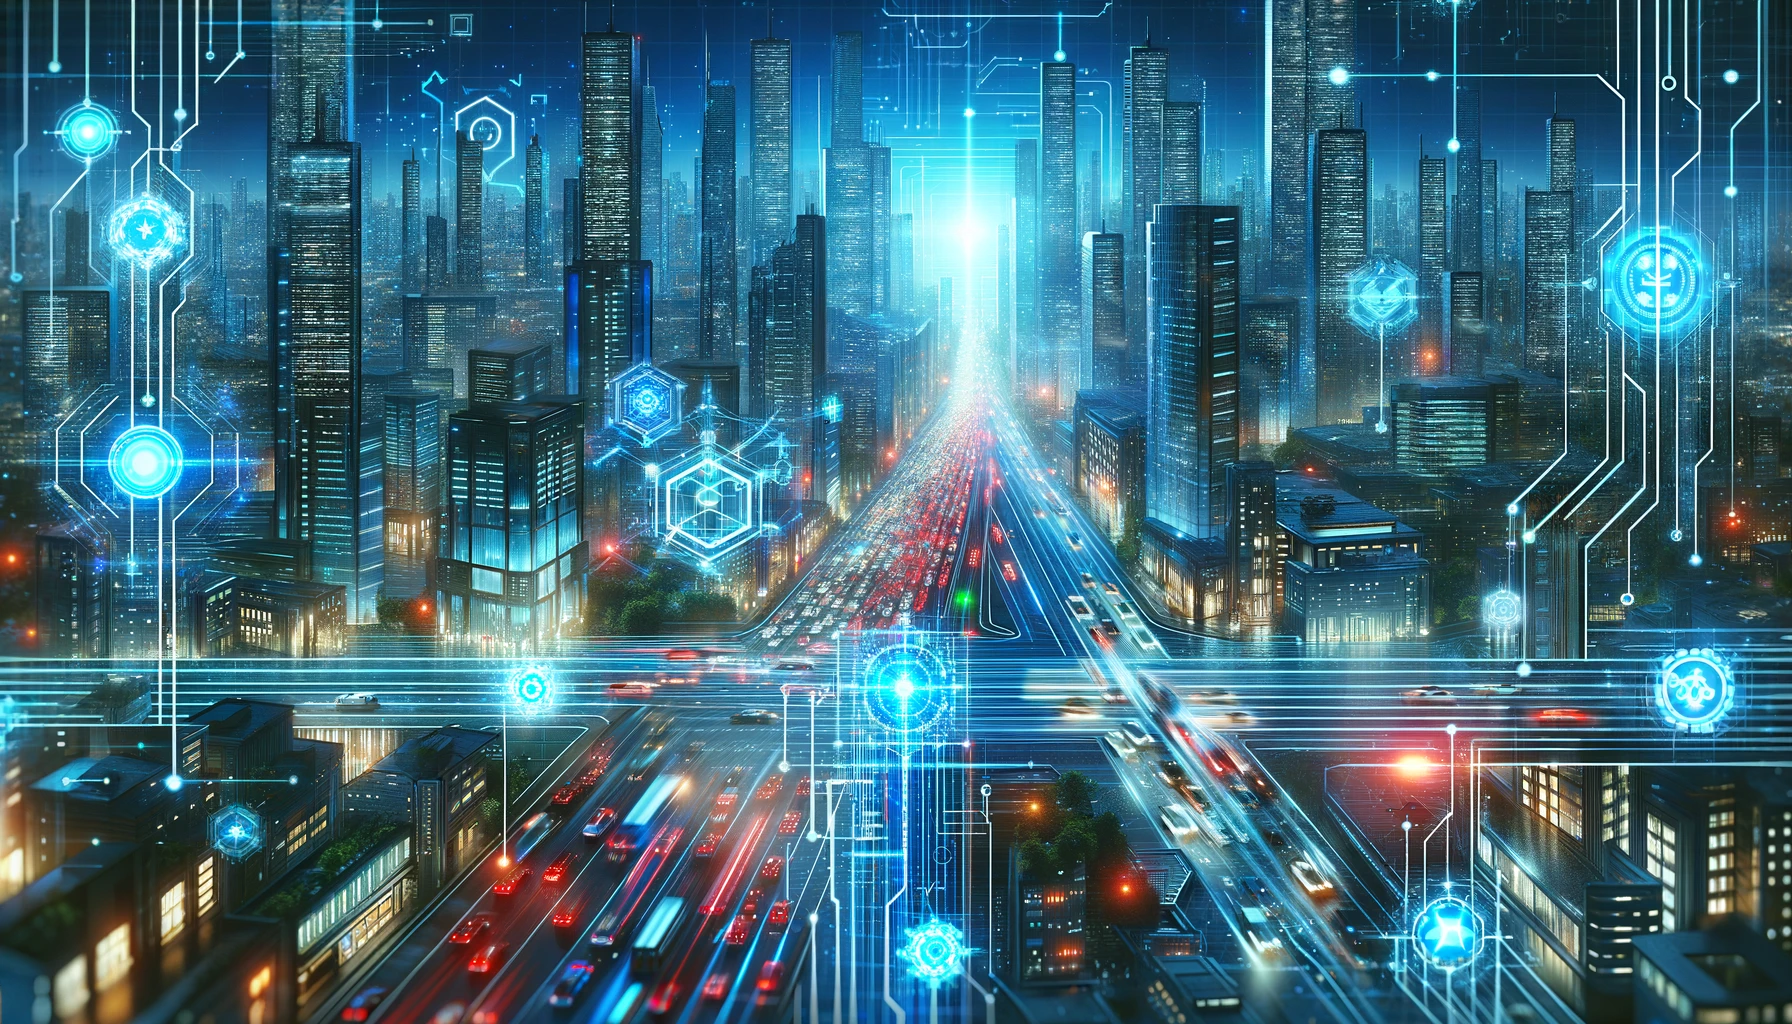 未来的なブロックチェーン都市景観、高度な技術とデジタル経済を象徴